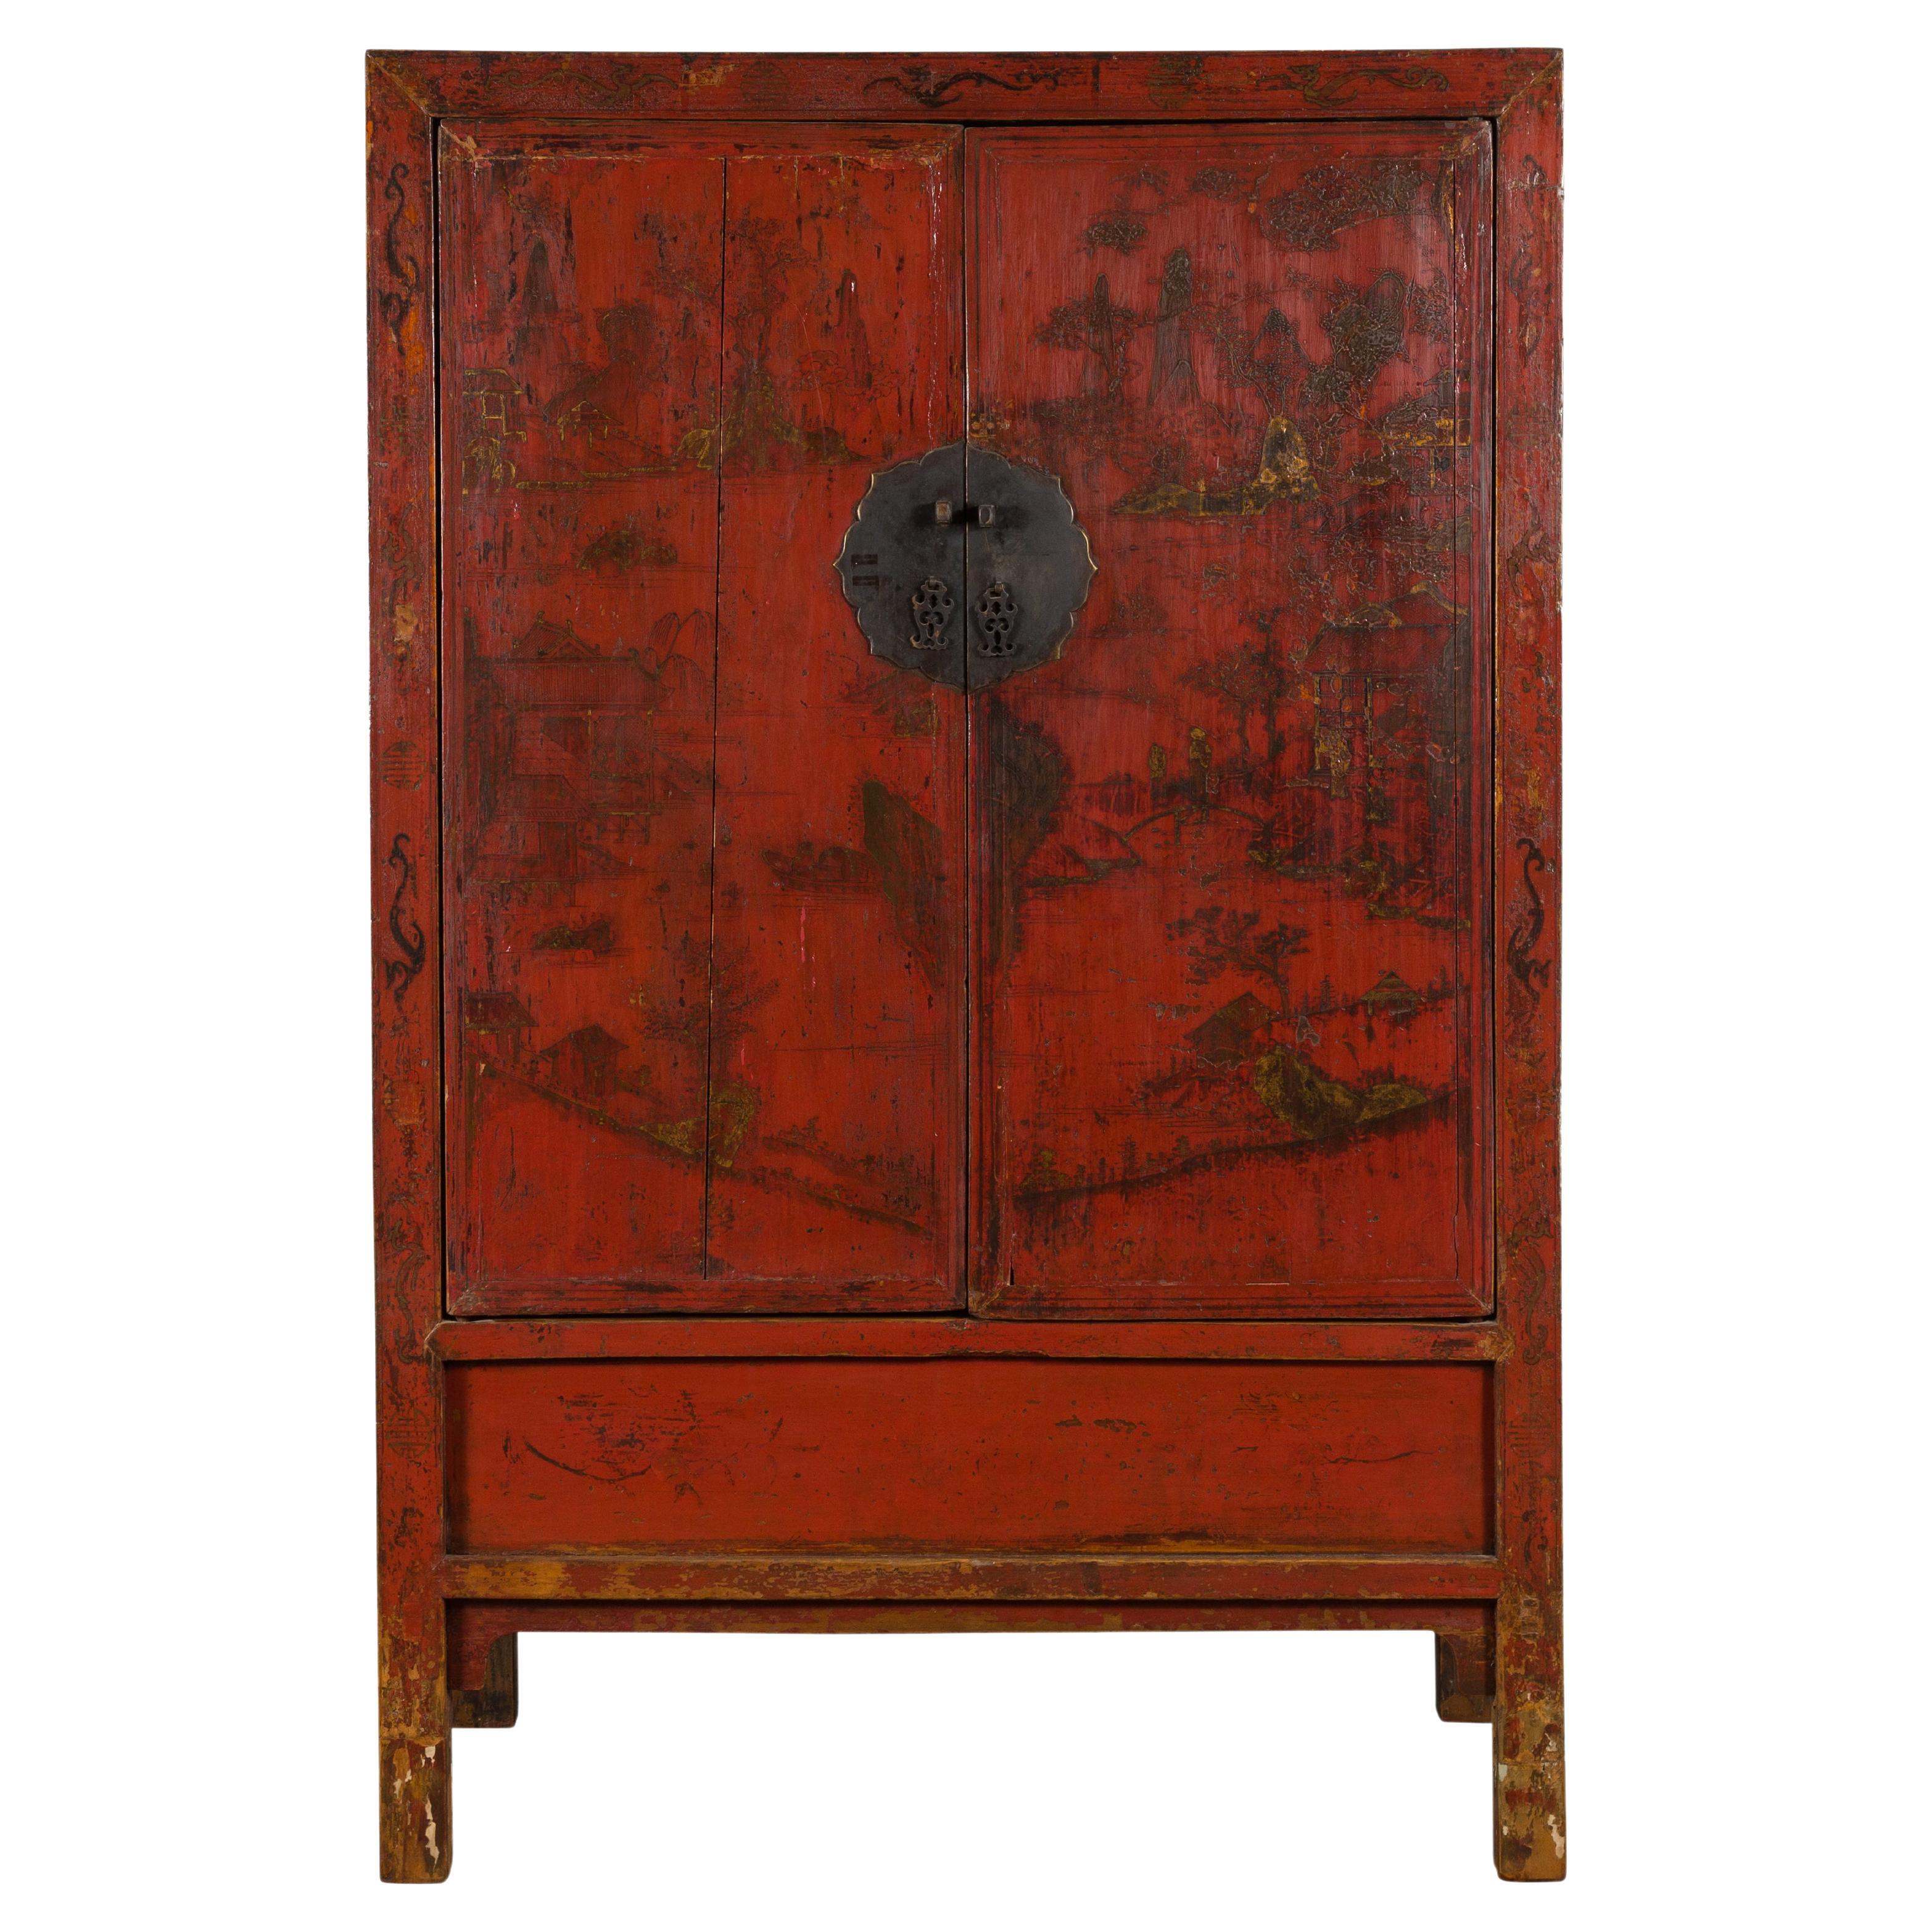 Cabinet en laque rouge de la dynastie chinoise Qing avec décor peint à la main